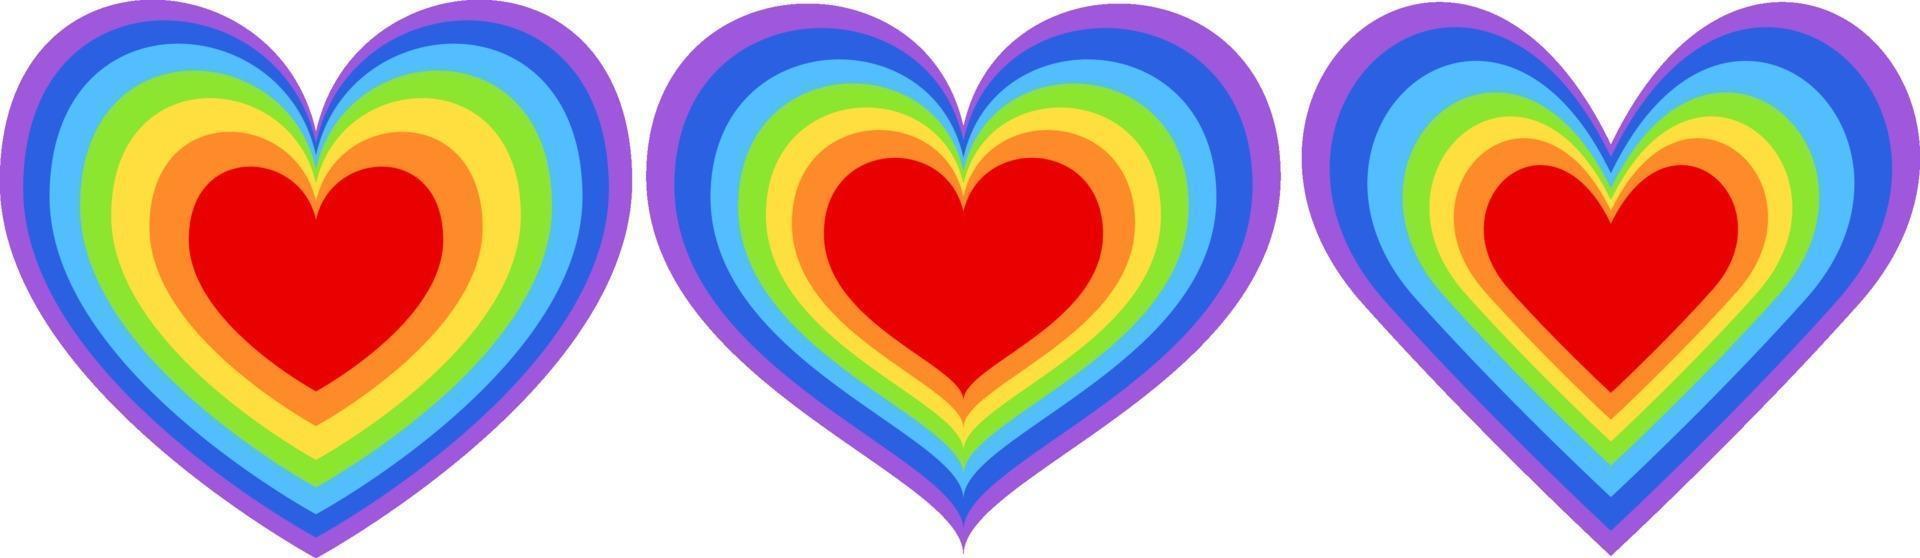 conjunto de diferentes formas de corazón arcoiris vector